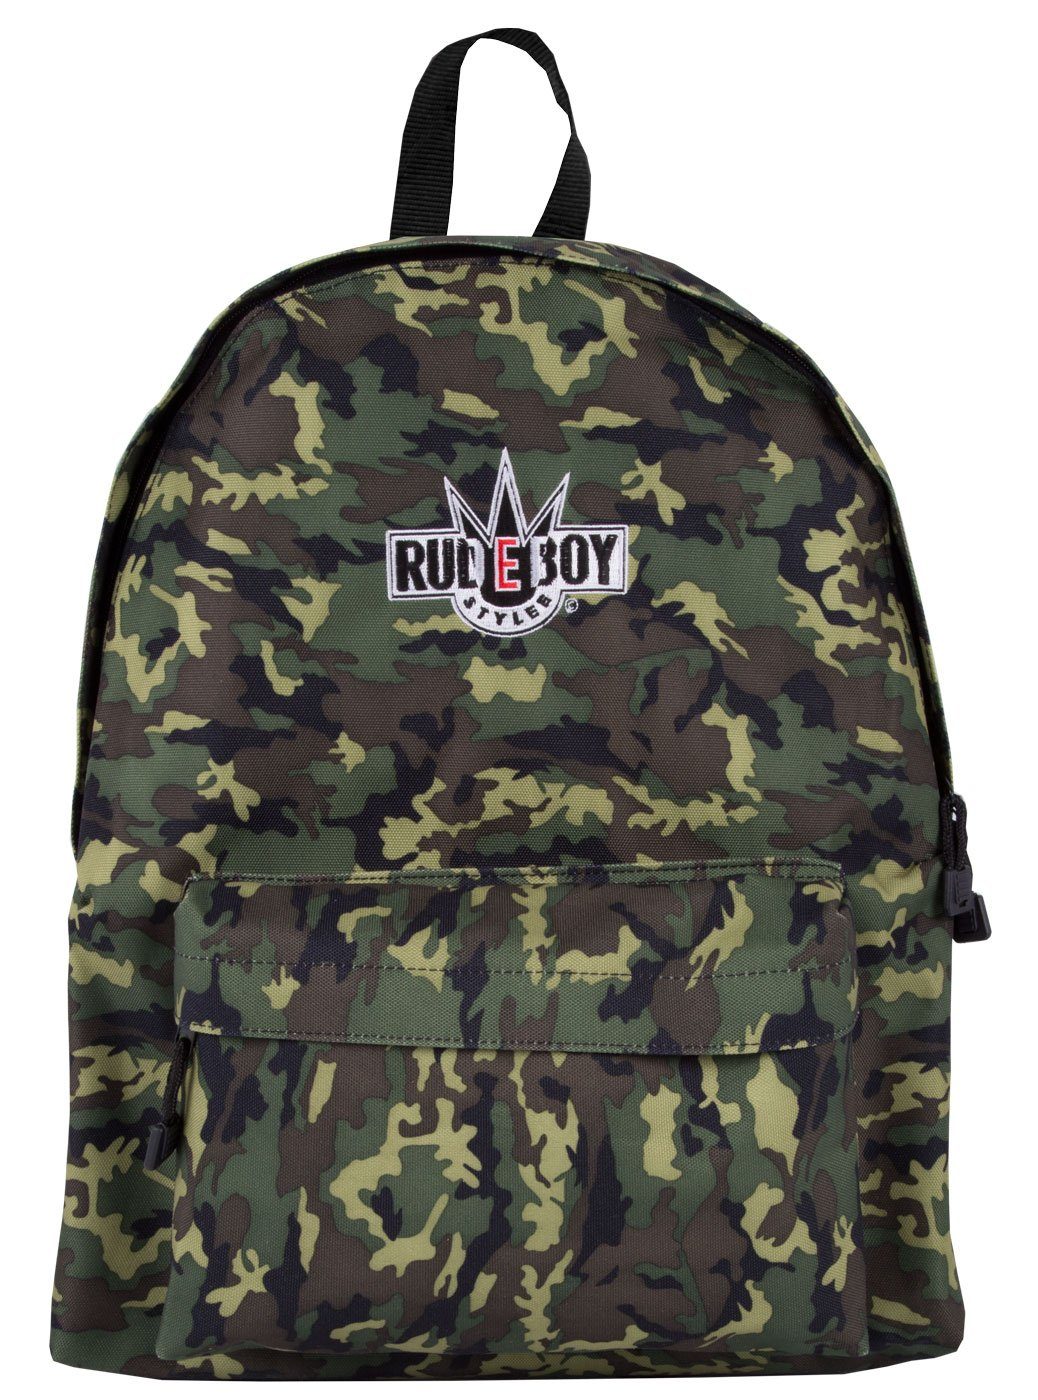 Rudeboy Stylee Sportrucksack Freizeitrucksack Classic Backpack in Camouflage, mit herausnehmbaren Einlegeboden Woodland Camo